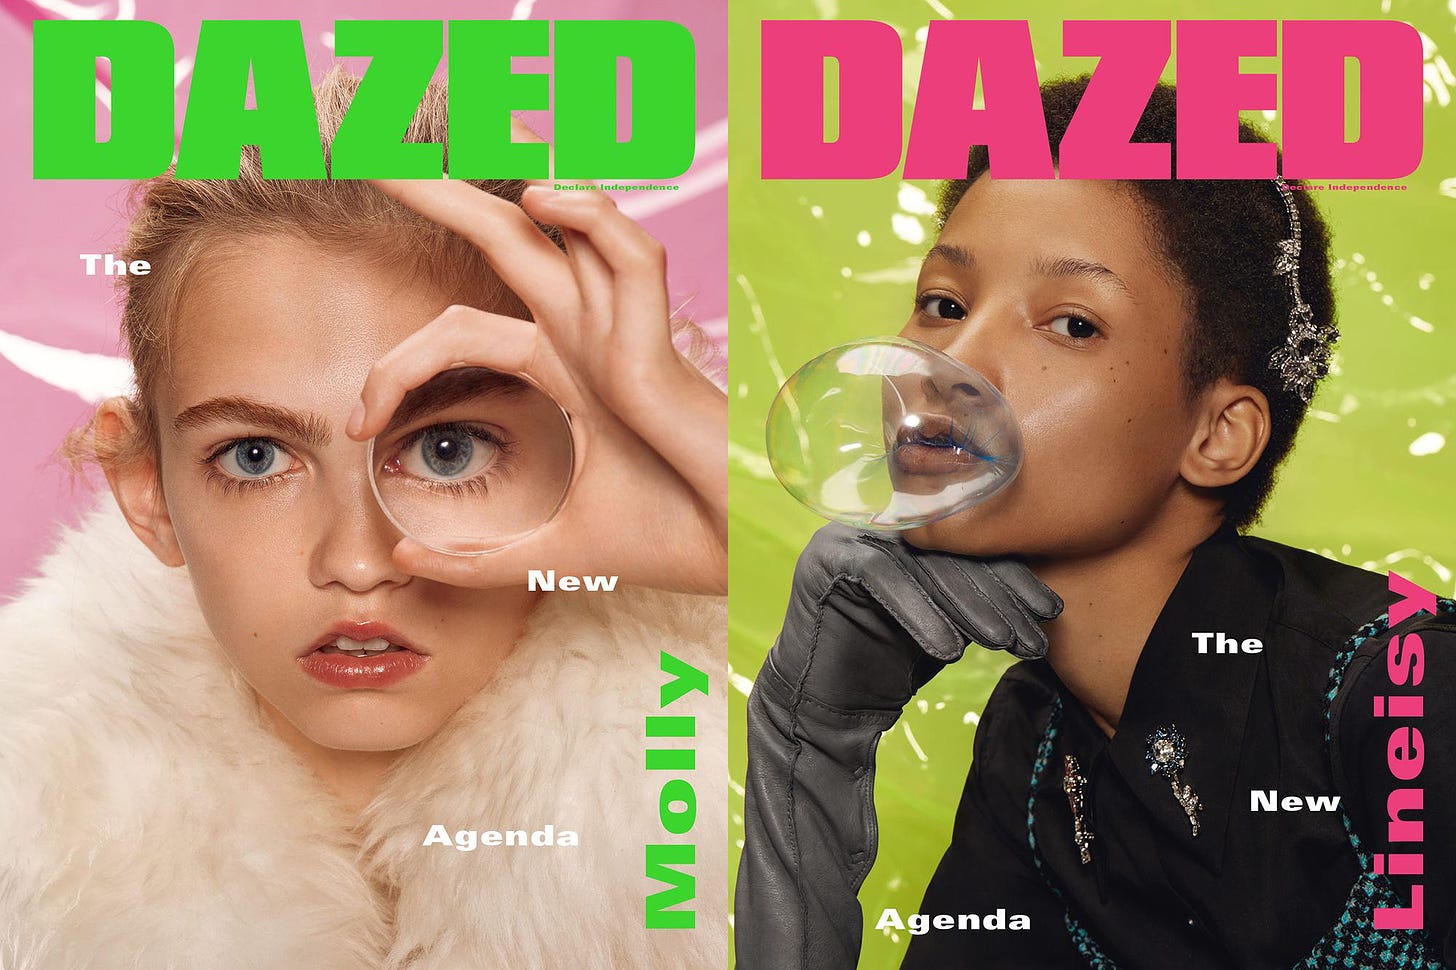 Dazed September Covers